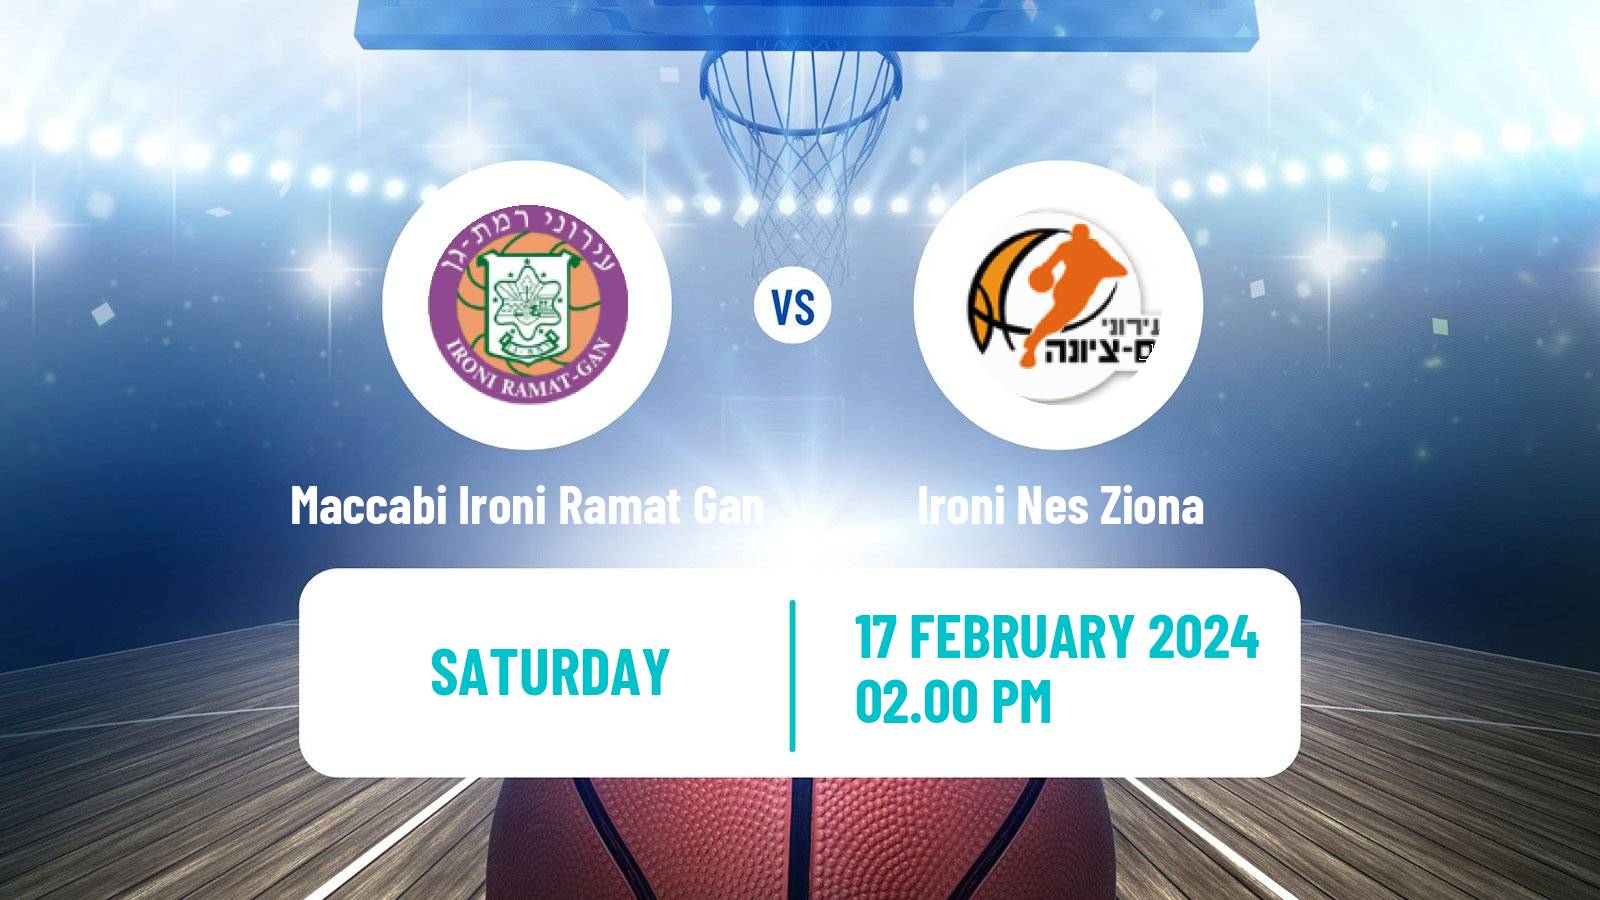 Basketball Israeli Basketball Super League Maccabi Ironi Ramat Gan - Ironi Nes Ziona